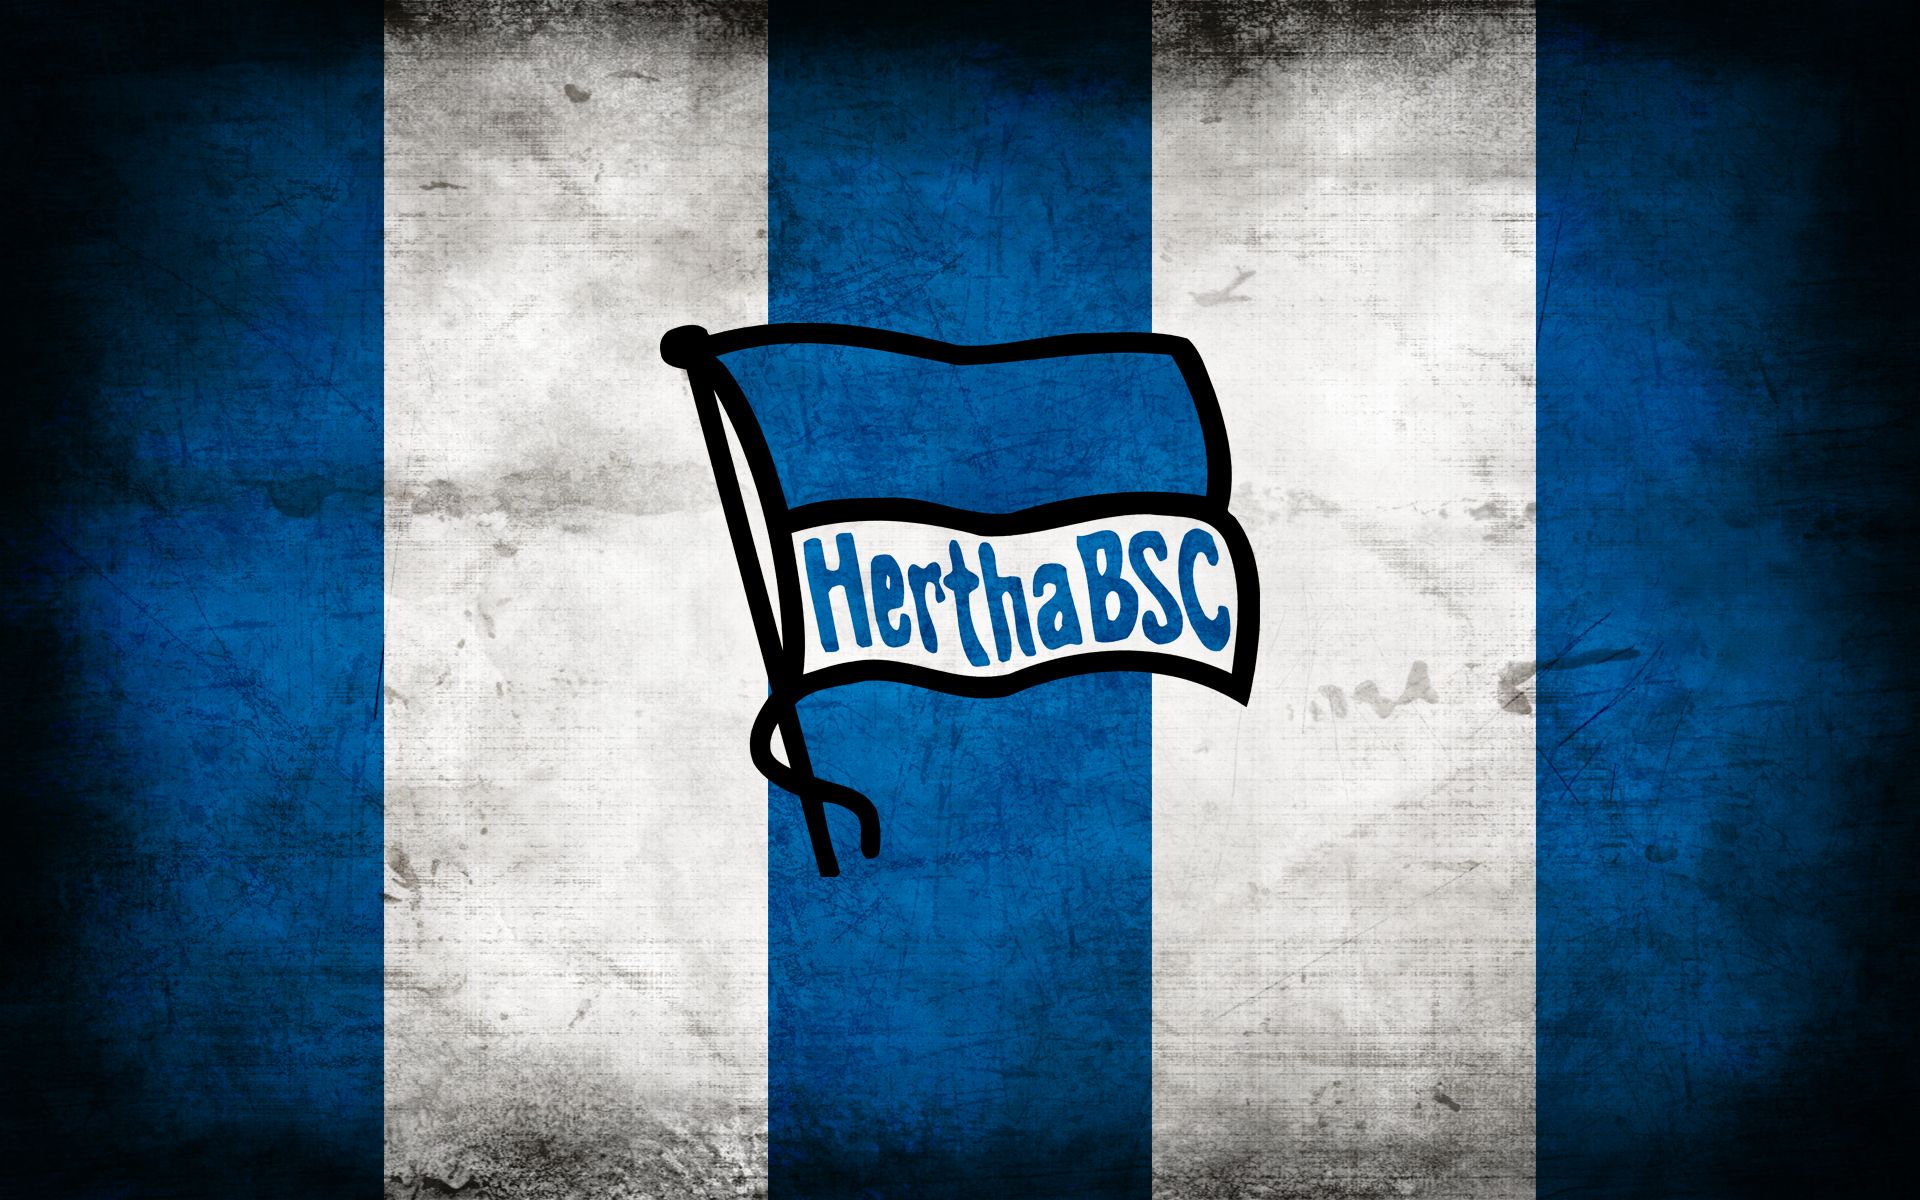 Los mejores fondos de pantalla de Hertha Bsc para la pantalla del teléfono